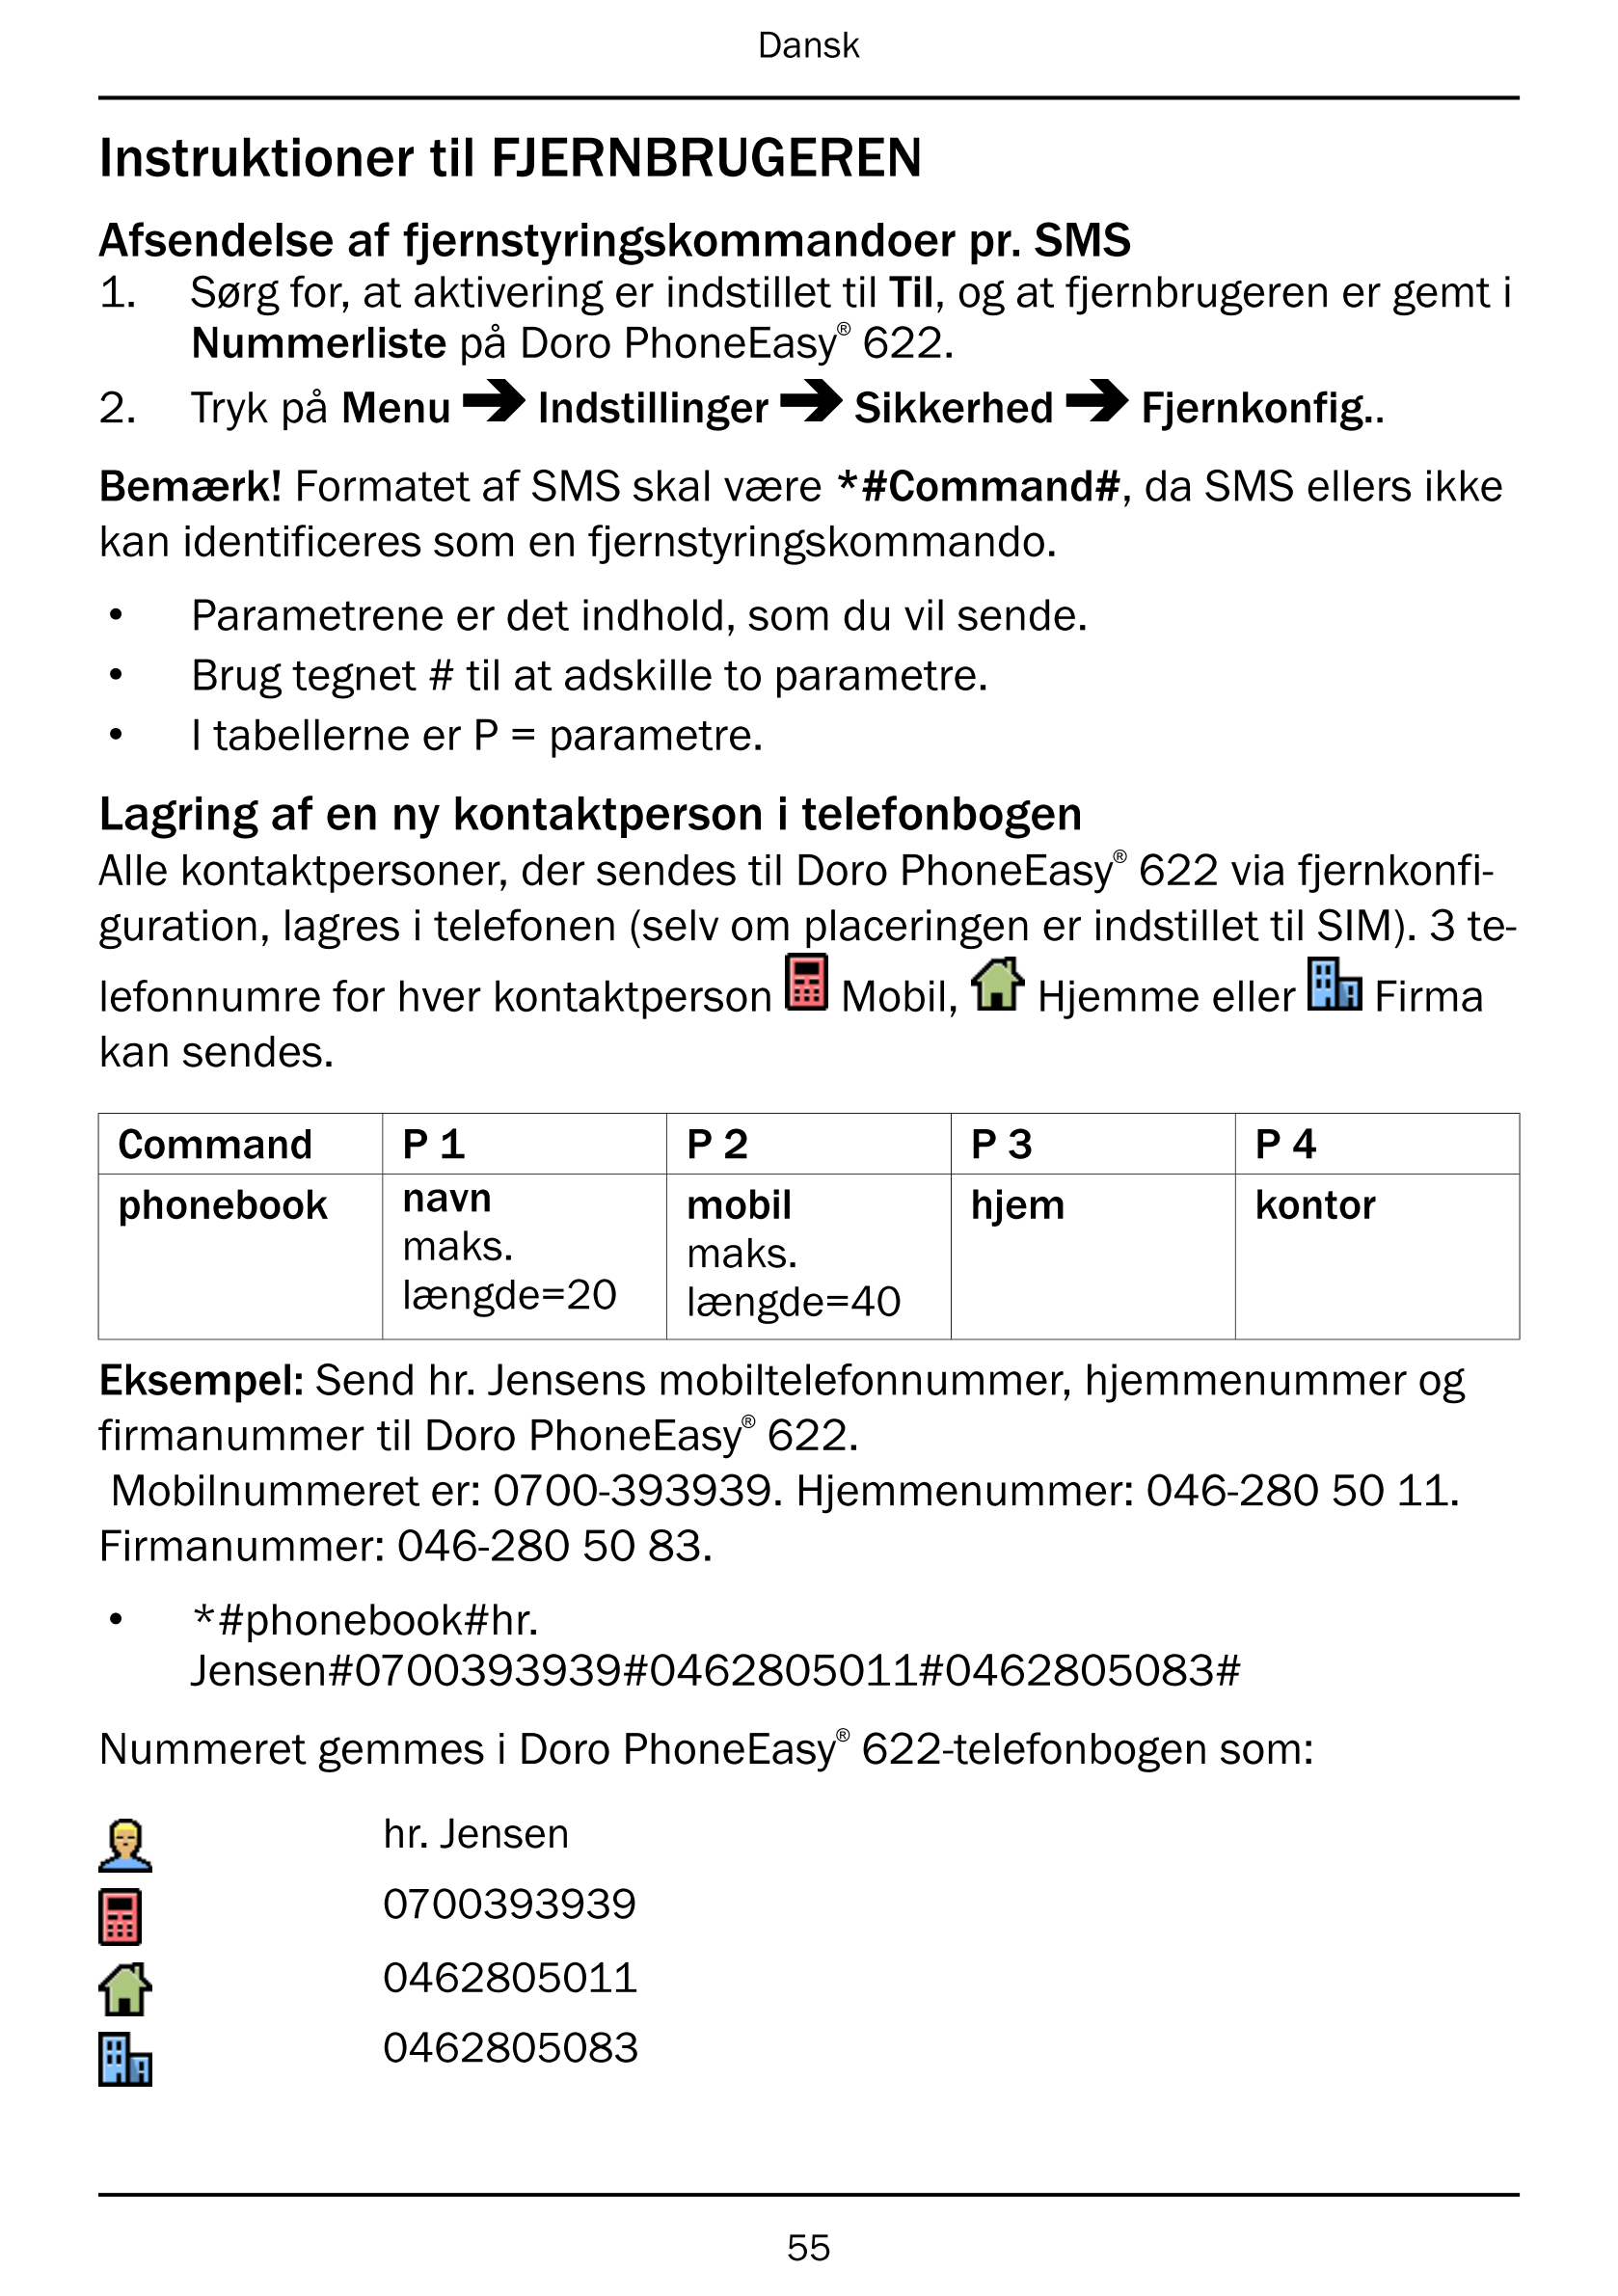 Dansk
Instruktioner til FJERNBRUGEREN
Afsendelse af fjernstyringskommandoer pr. SMS
1.     Sørg for, at aktivering er indstillet